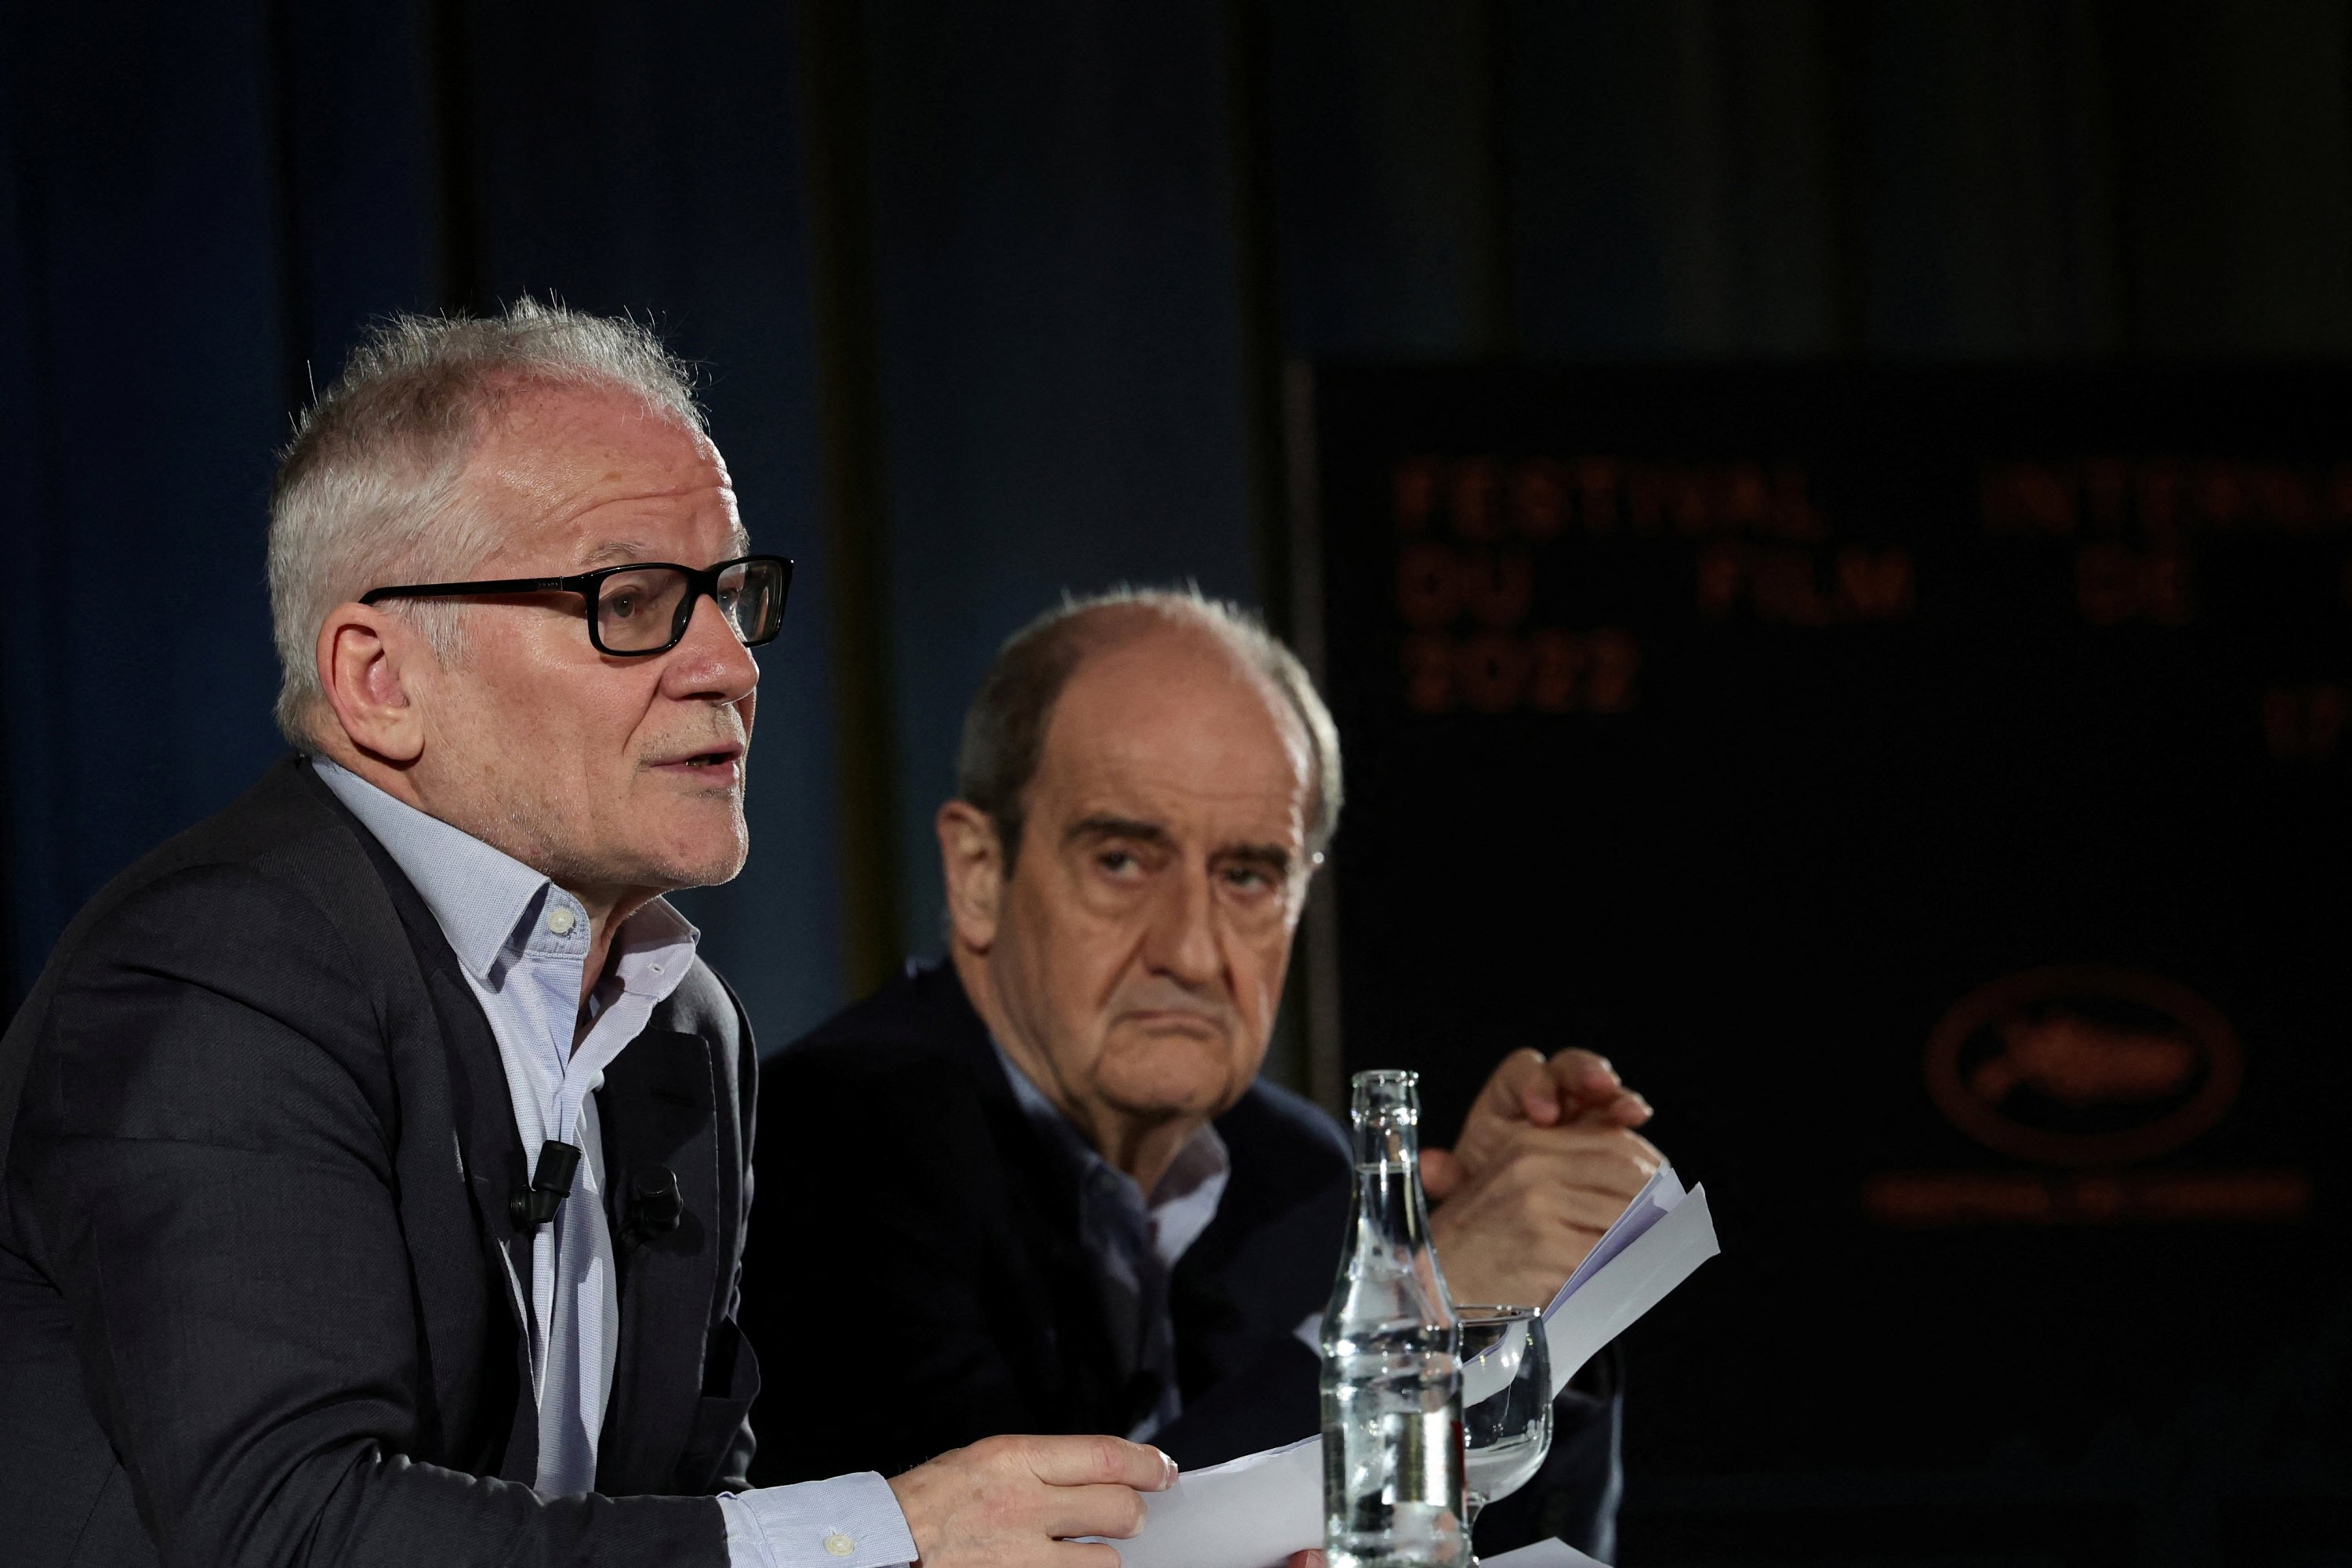 Delegasi Jenderal festival Film Cannes Thierry Fremaux dan Presiden festival Film Cannes Pierre Lescure berbicara selama presentasi pemilihan resmi Festival Film Internasional Cannes ke-75 di Paris, Prancis, 14 April 2022. (REUTERS)